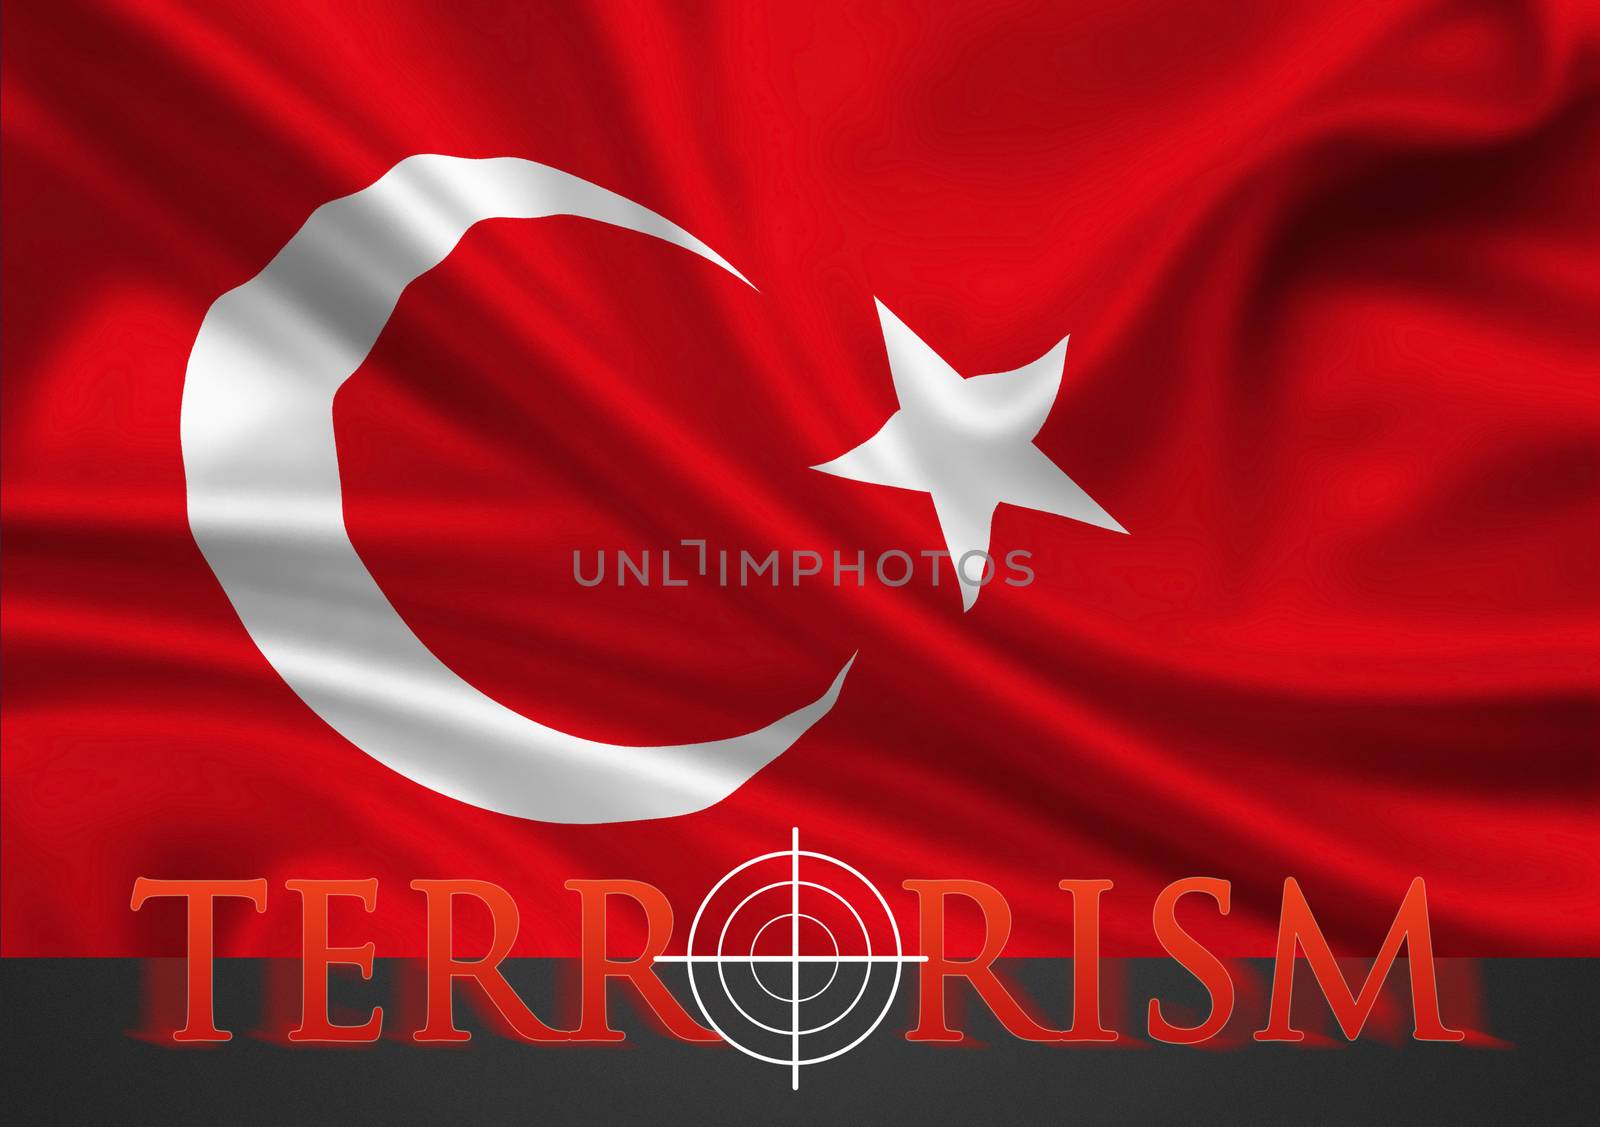 Turkey terrorism illustration - white hairline cross in red lettering on turkish flag